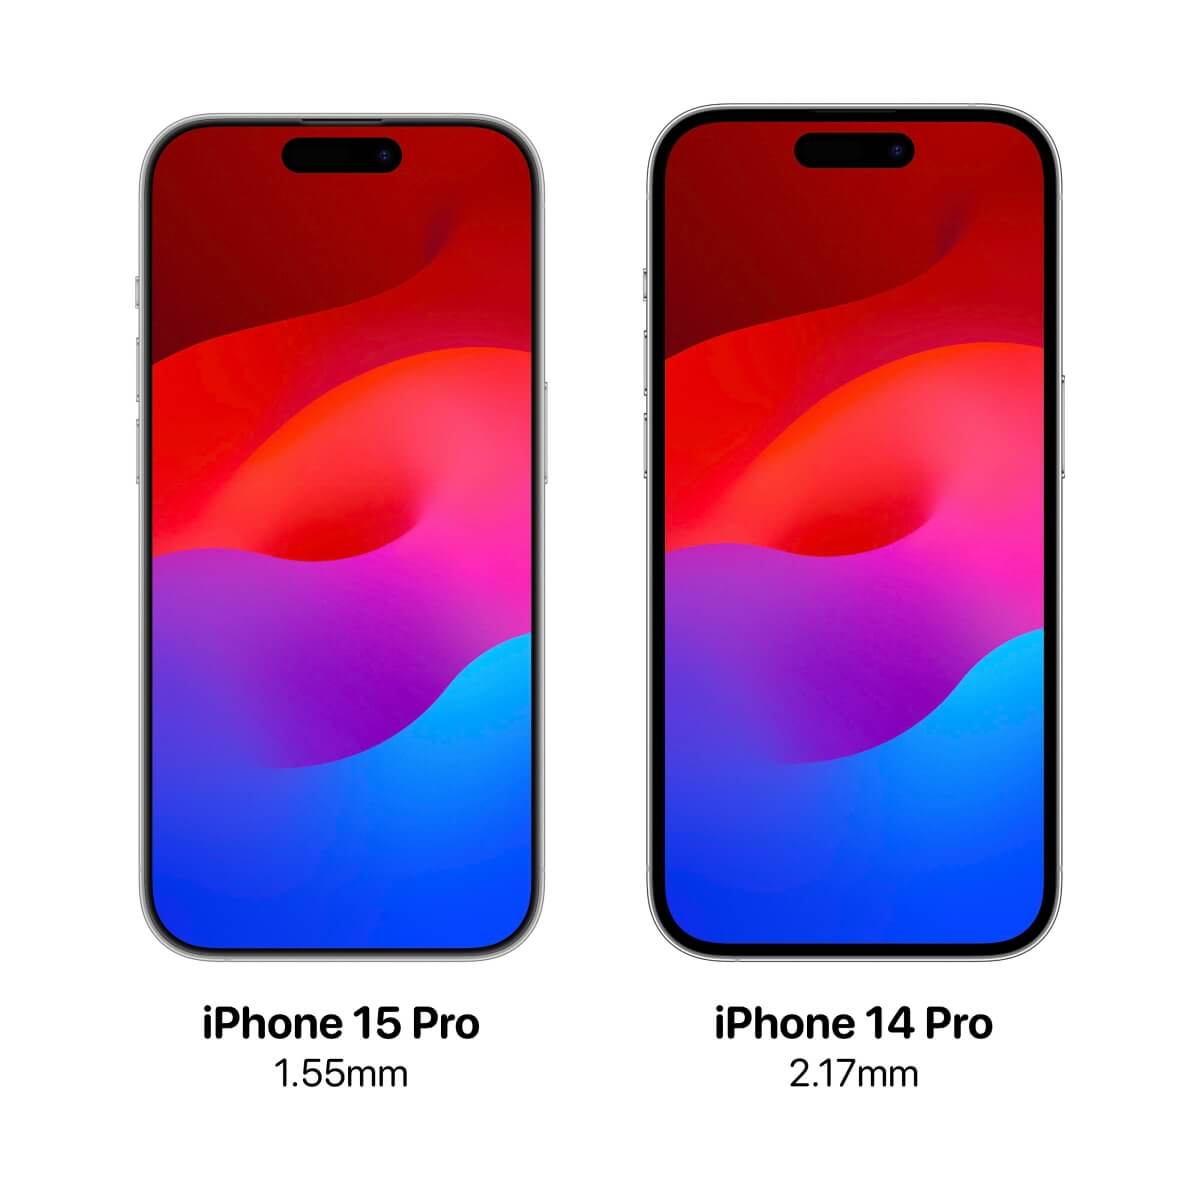 iPhone 15 Pro 規格、價錢、顏色與可能迎來的 13 項新功能搶先看！ - 2023 蘋果發表會, iPhone 15, iPhone 15 Pro, 蘋果發表會 - 塔科女子